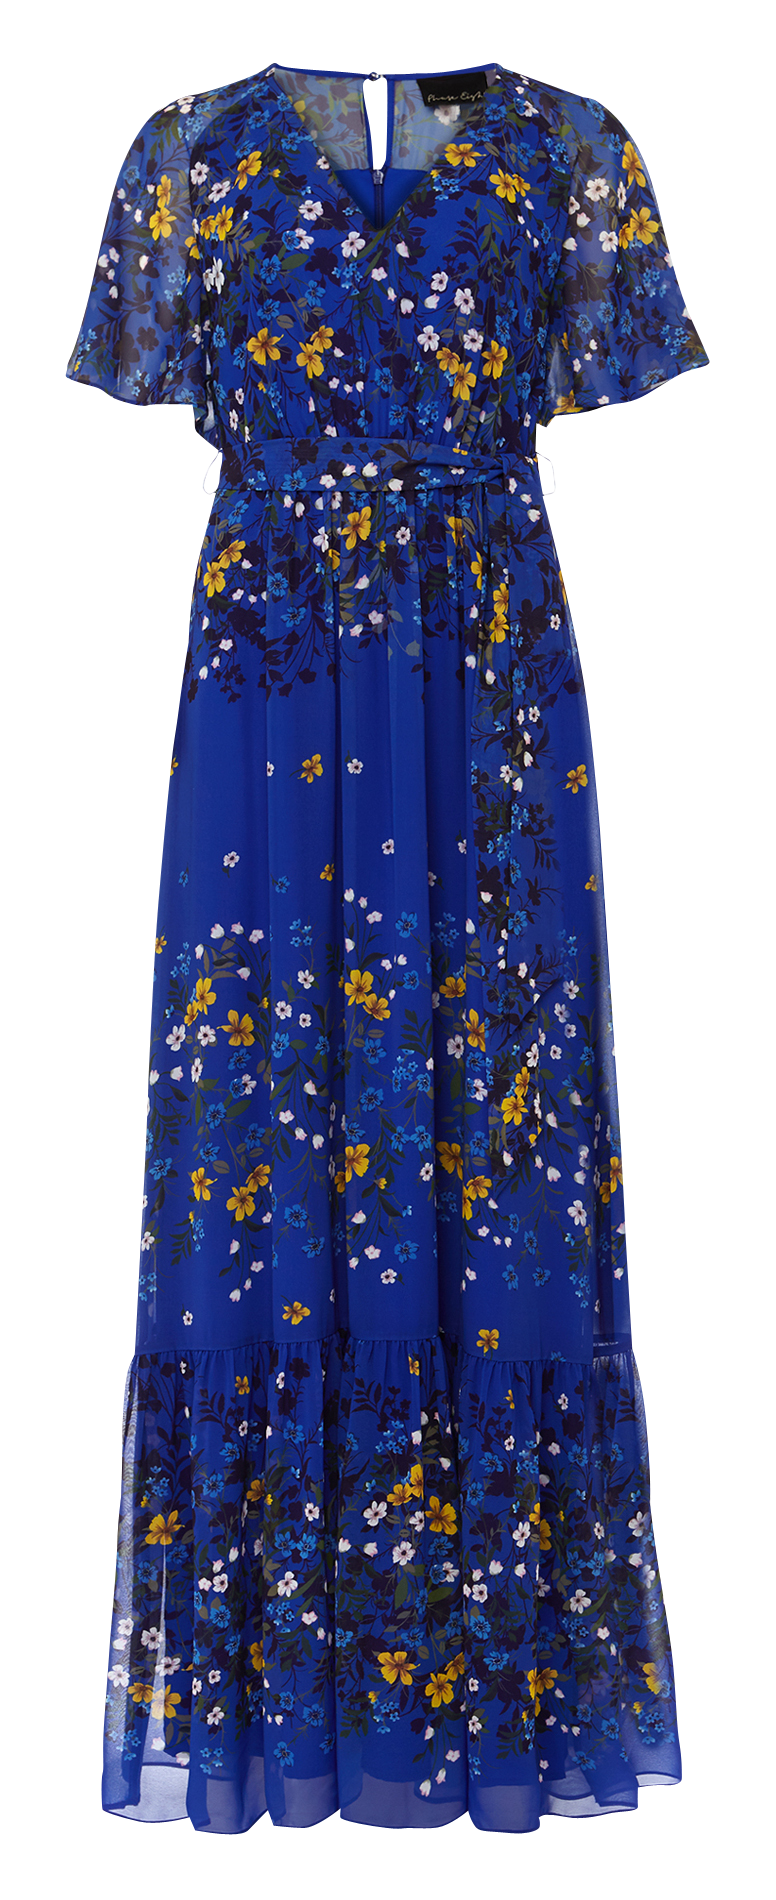 Long Flowing Floral Print Dress Blue ...